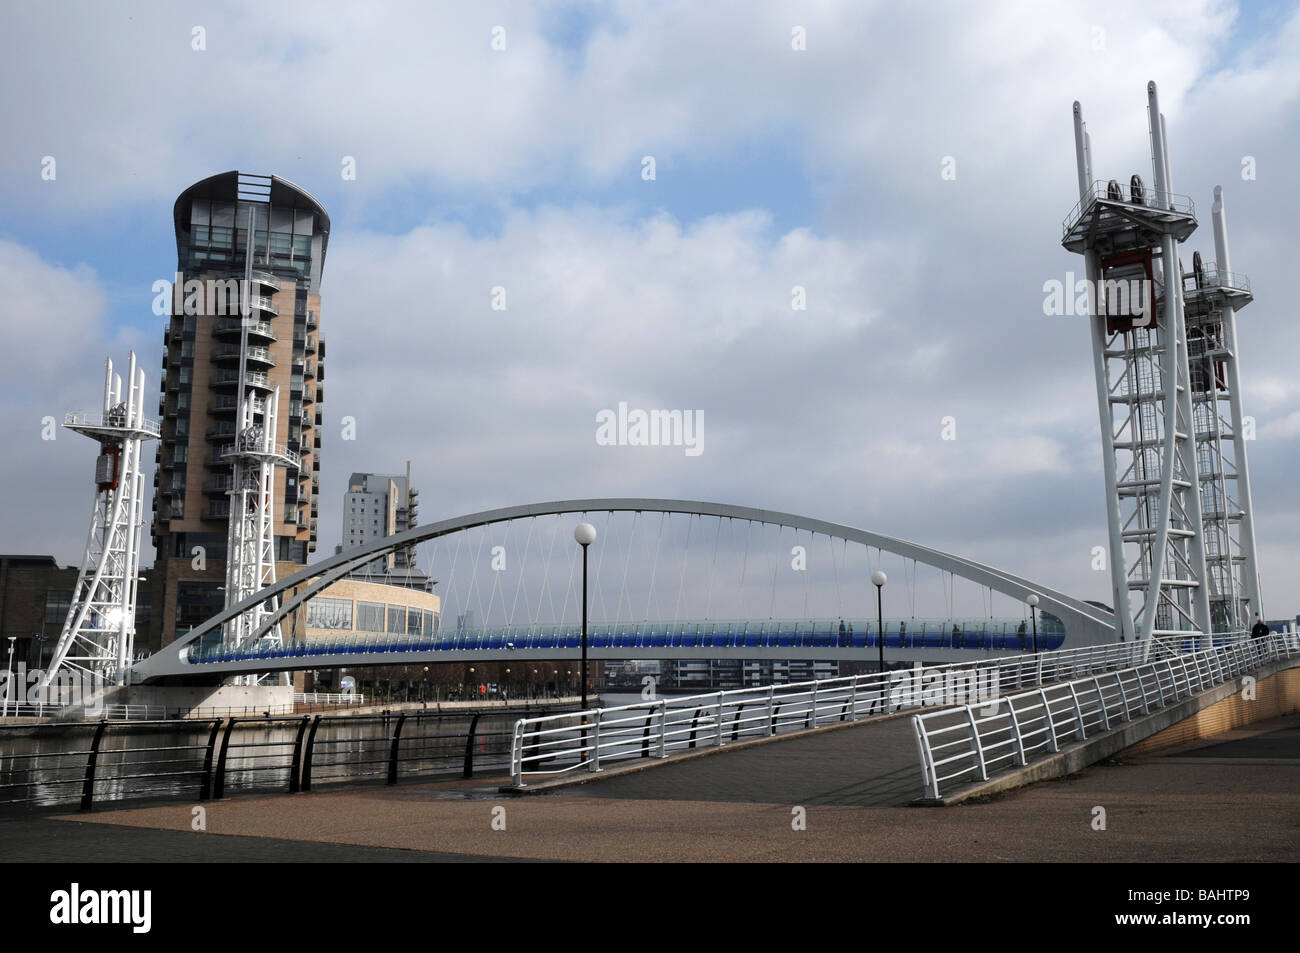 Objectifs du Millénaire pour le levage Passerelle, Salford Quays, Manchester, Angleterre, RU Banque D'Images